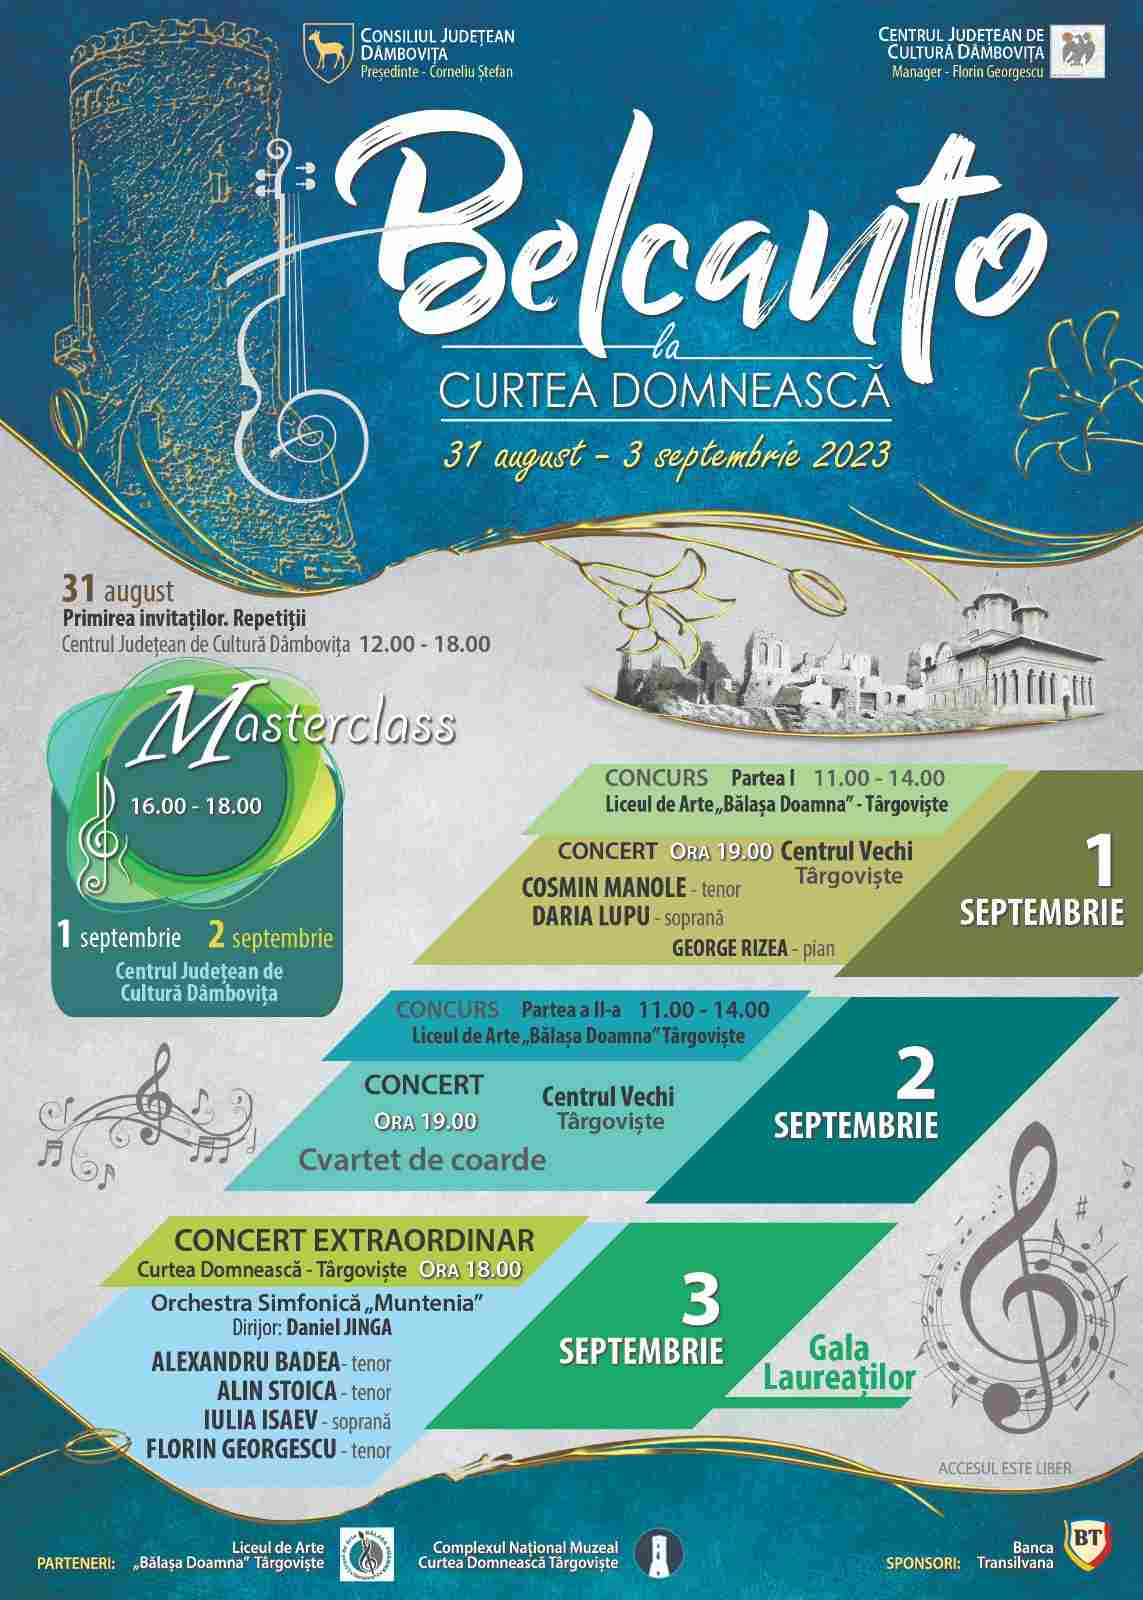  Concursul Național de Muzică Clasică „Belcanto la Curtea Domnească”, la a II-a ediție